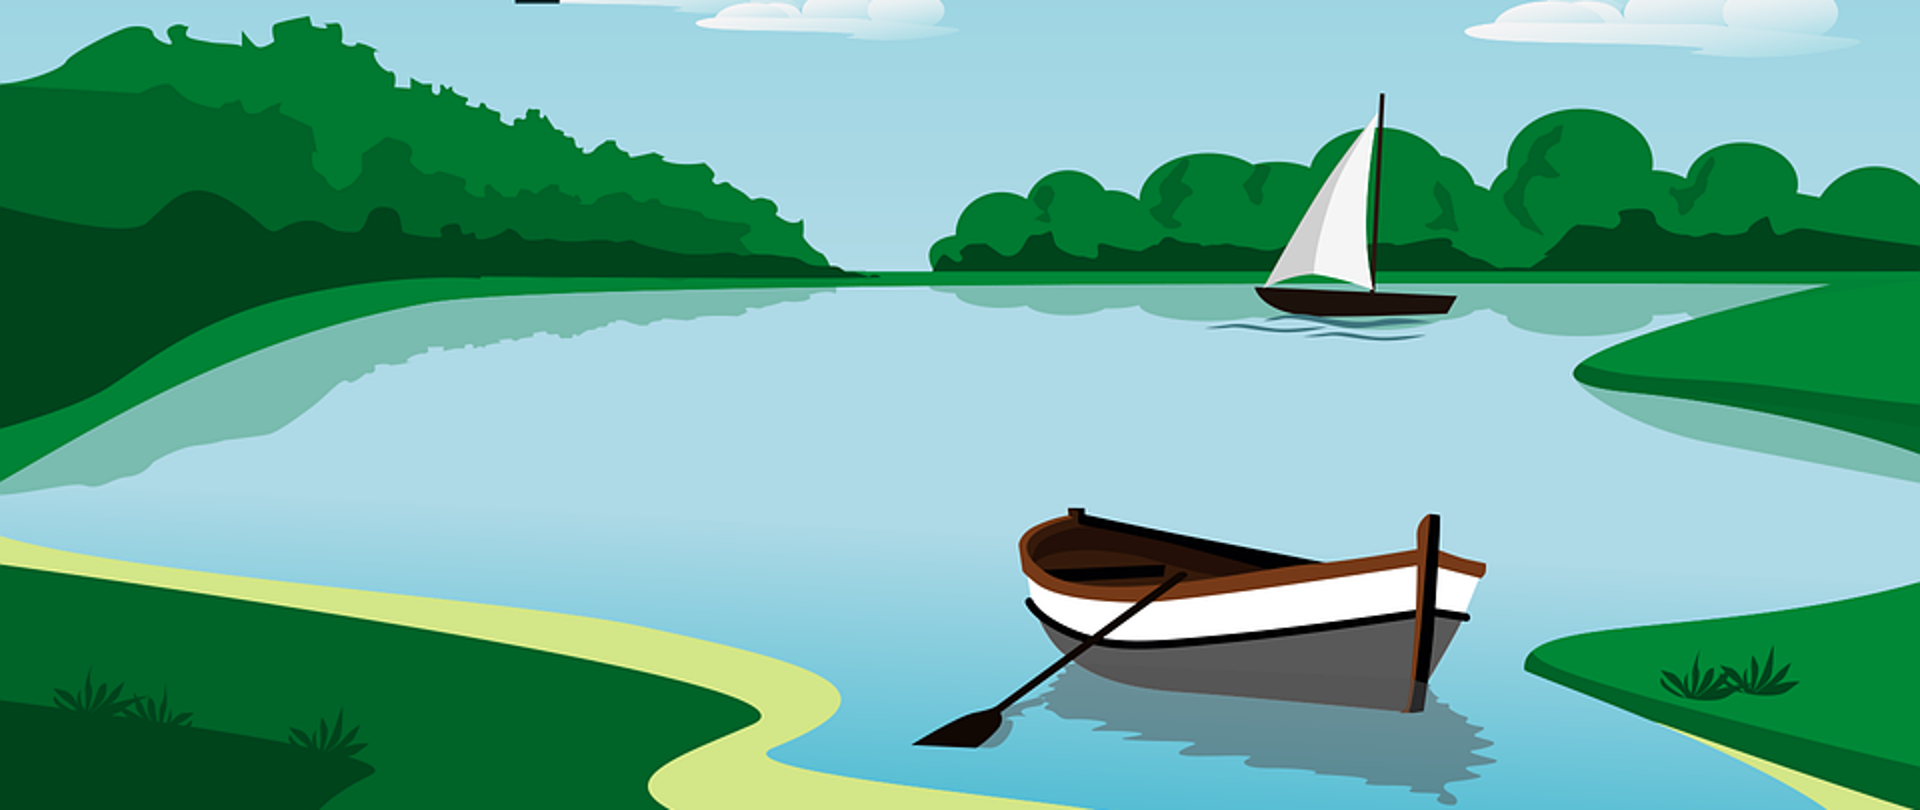 Zdjęcie przedstawia jezioro, po którym dryfuje łódka oraz żaglówka.